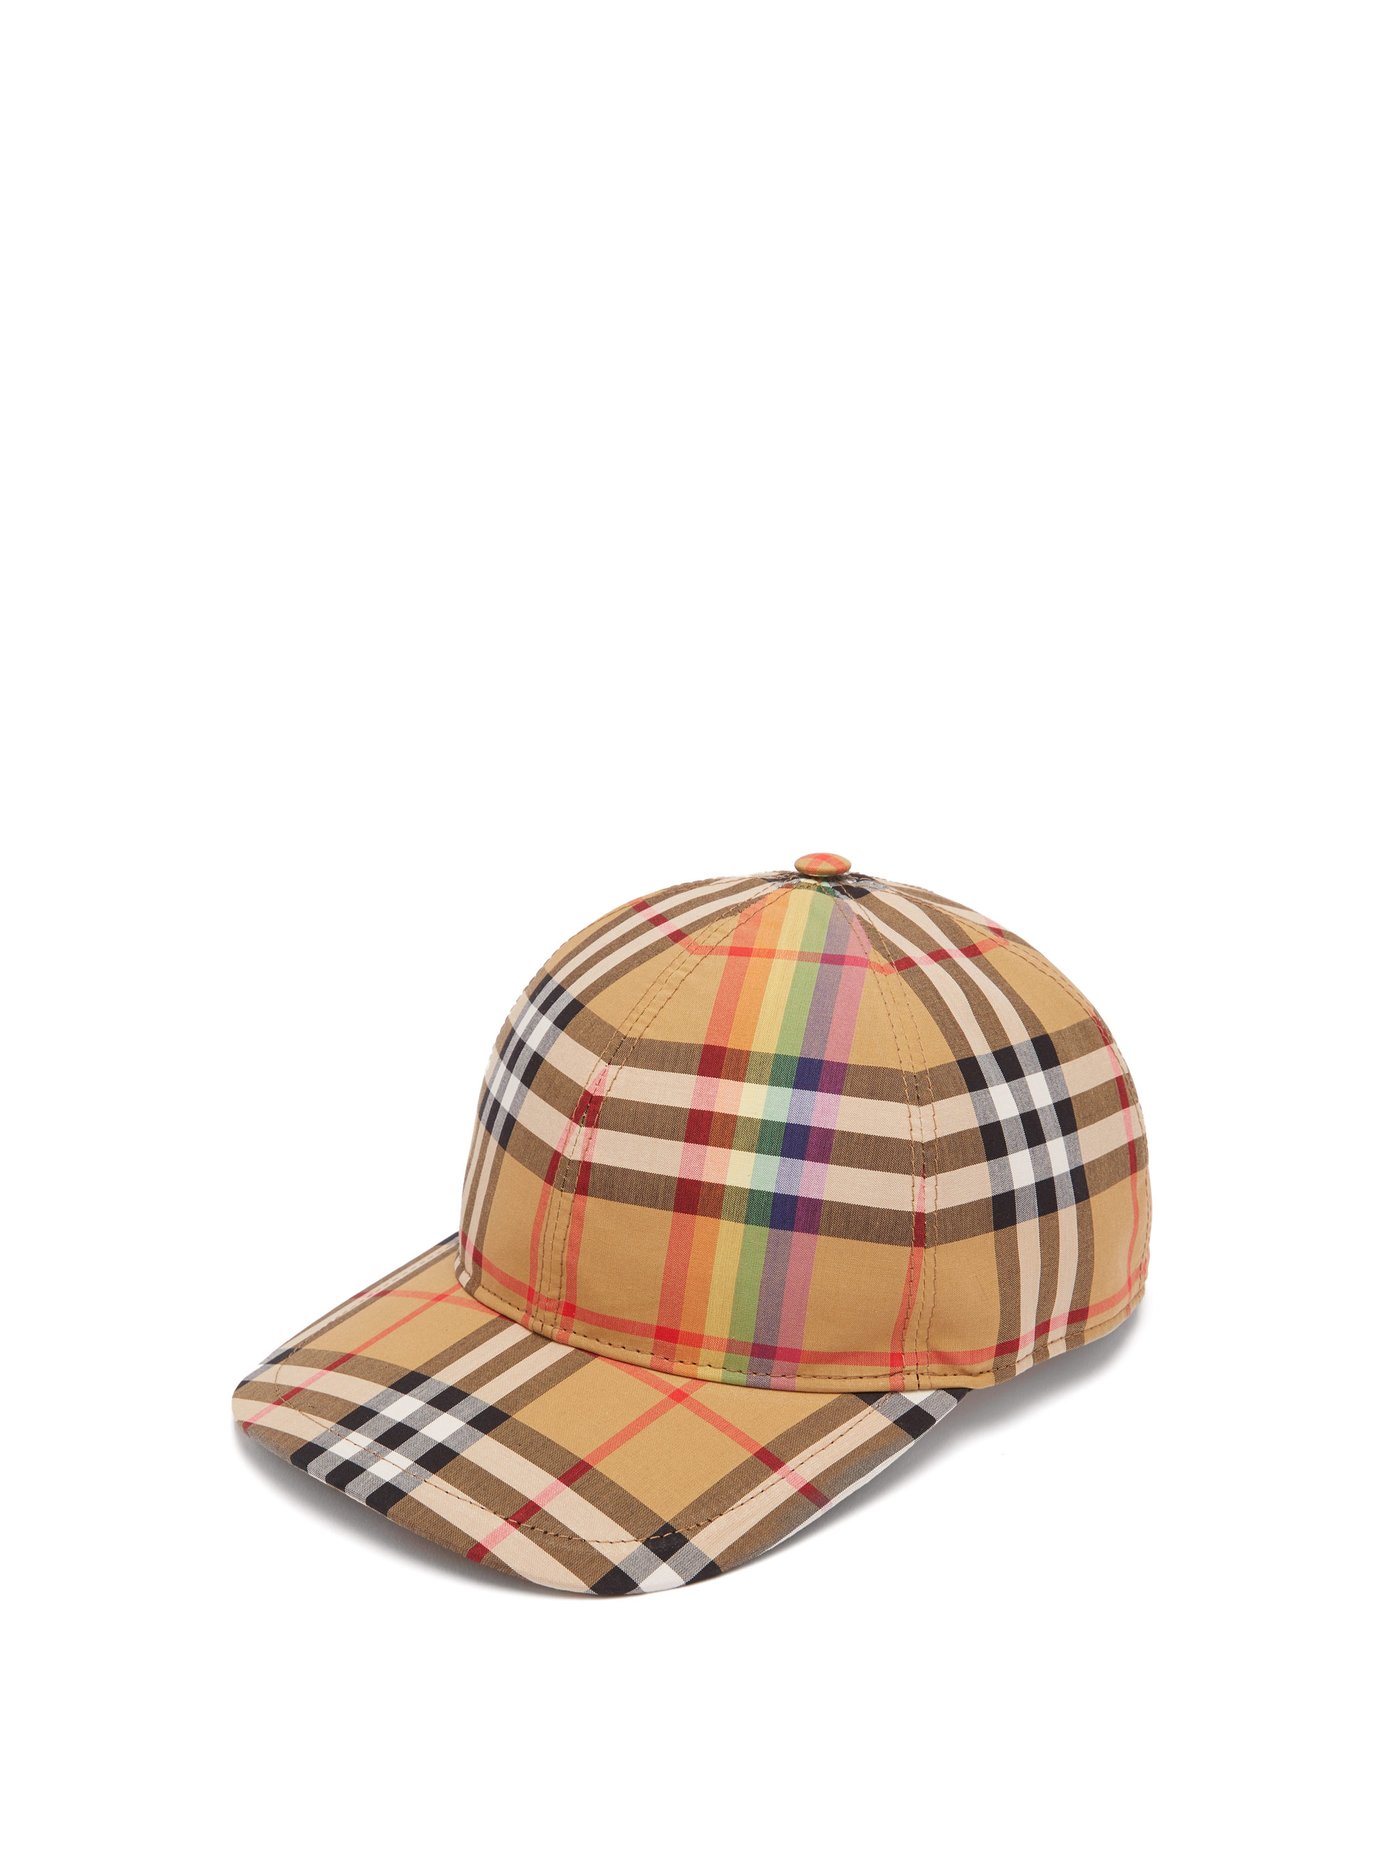 burberry rainbow cap